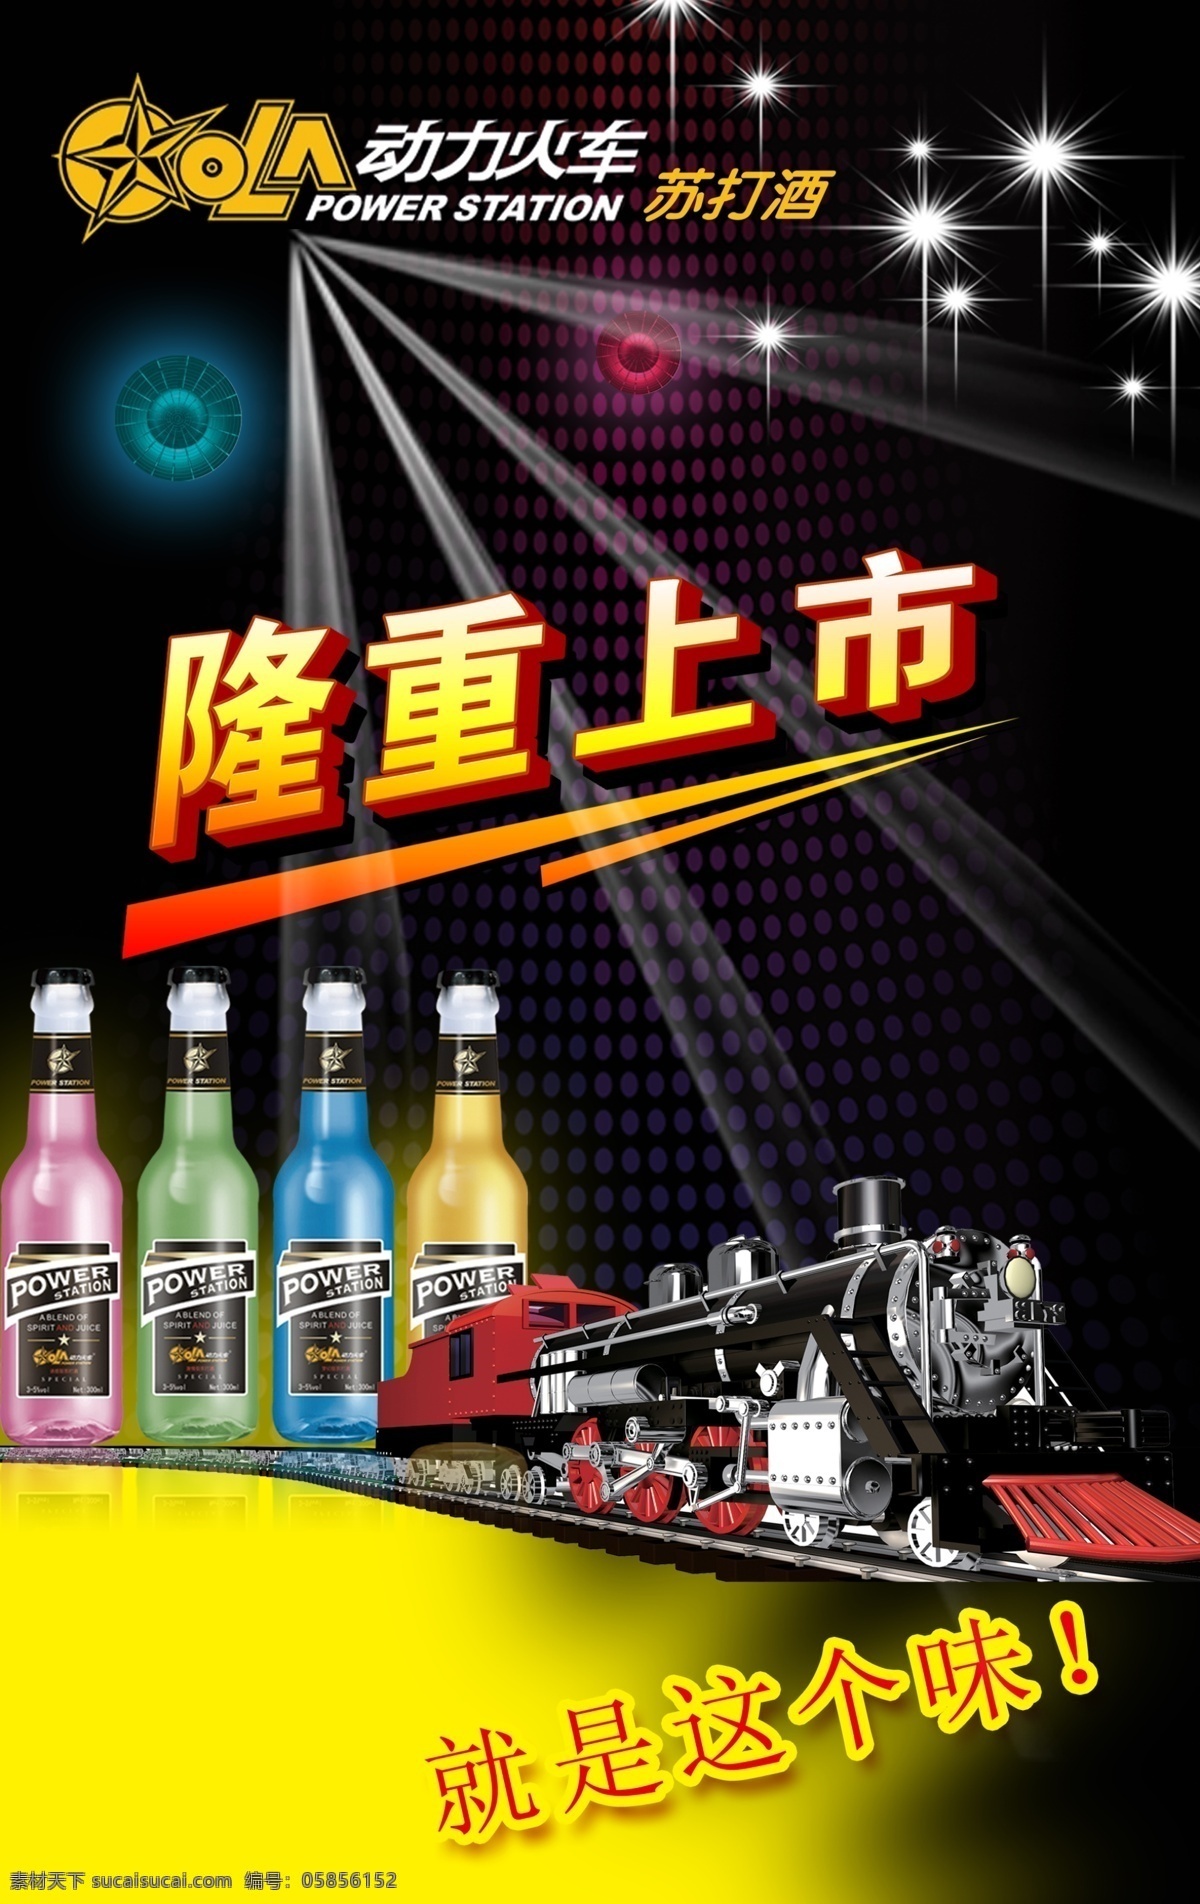 啤酒海报 模版下载 动力火车 苏打酒 酒 火车 彩色酒瓶 酒吧 广告设计模板 源文件